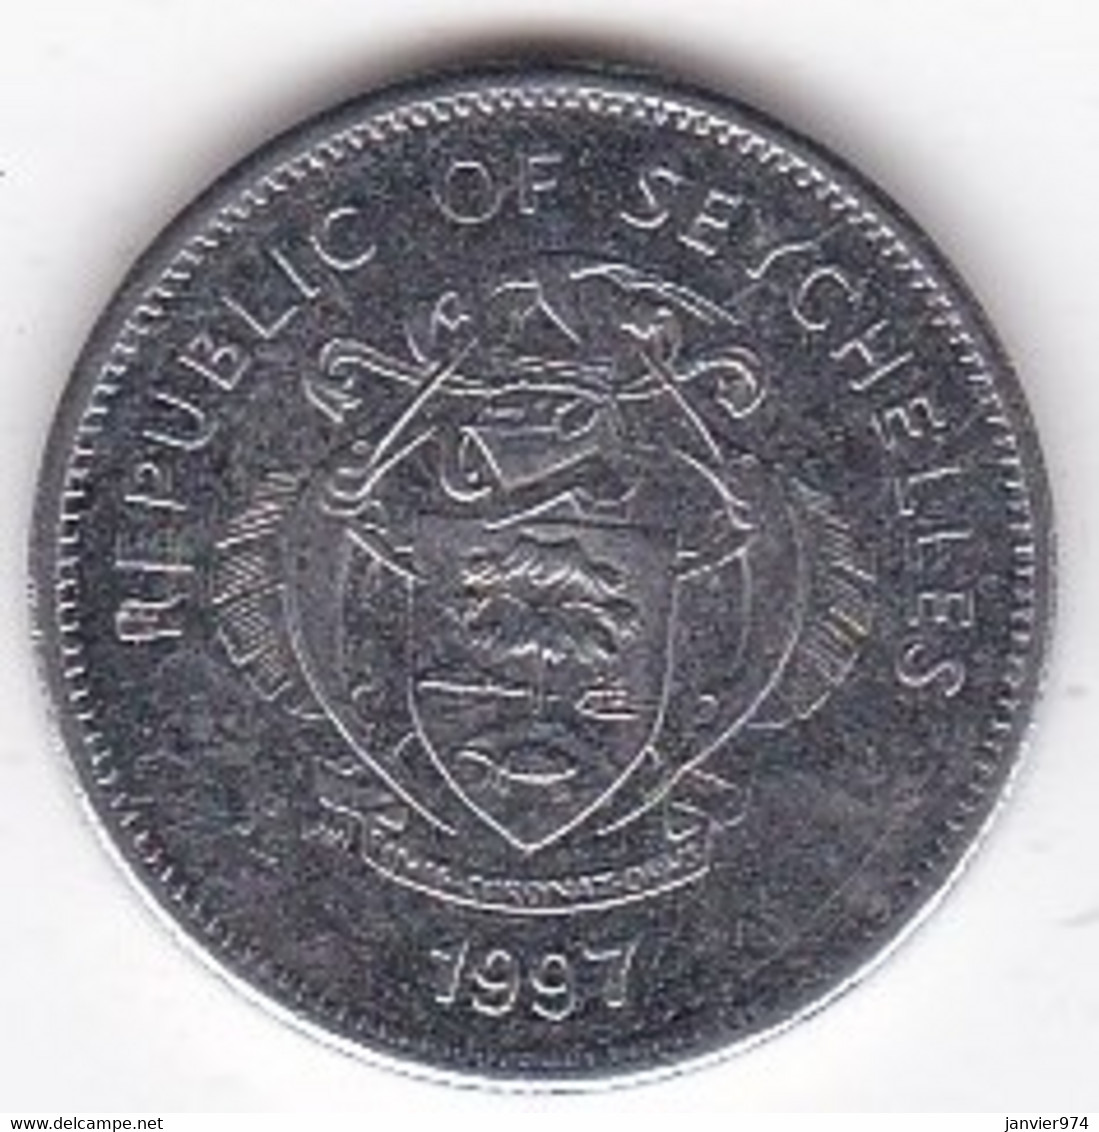 Seychelles 25 Cents 1997. En Cupro Nickel, KM# 49 - Seychelles